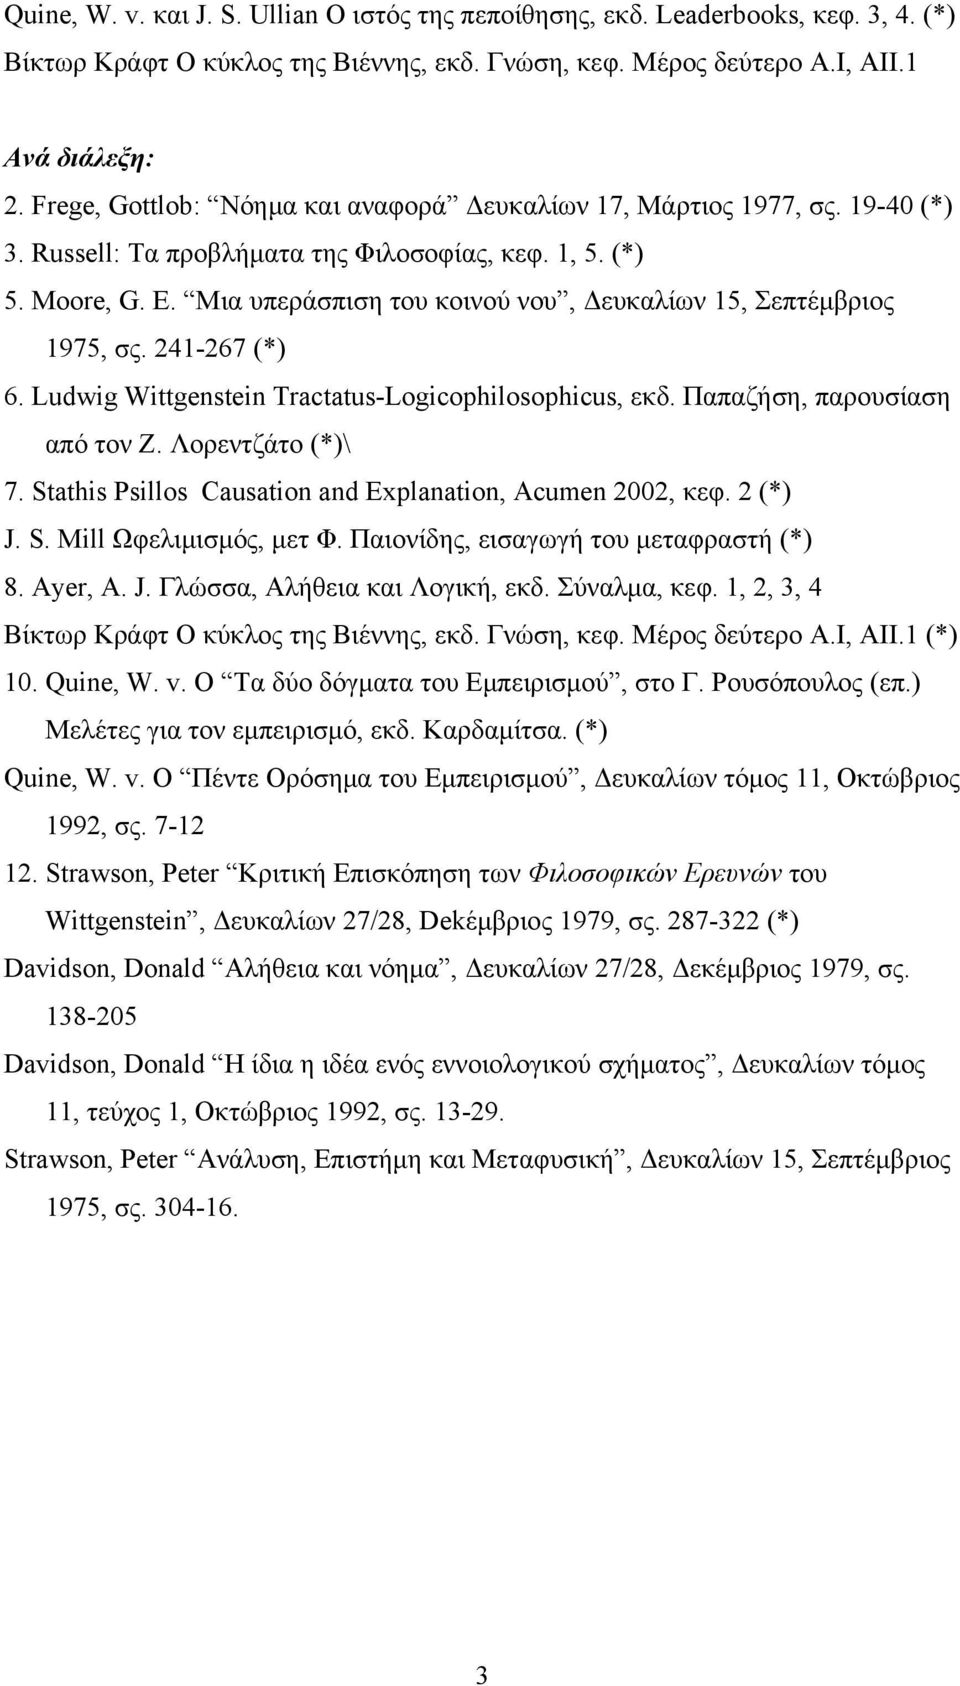 Μια υπεράσπιση του κοινού νου, Δευκαλίων 15, Σεπτέμβριος 1975, σς. 241-267 (*) 6. Ludwig Wittgenstein Tractatus-Logicophilosophicus, εκδ. Παπαζήση, παρουσίαση από τον Ζ. Λορεντζάτο (*)\ 7.